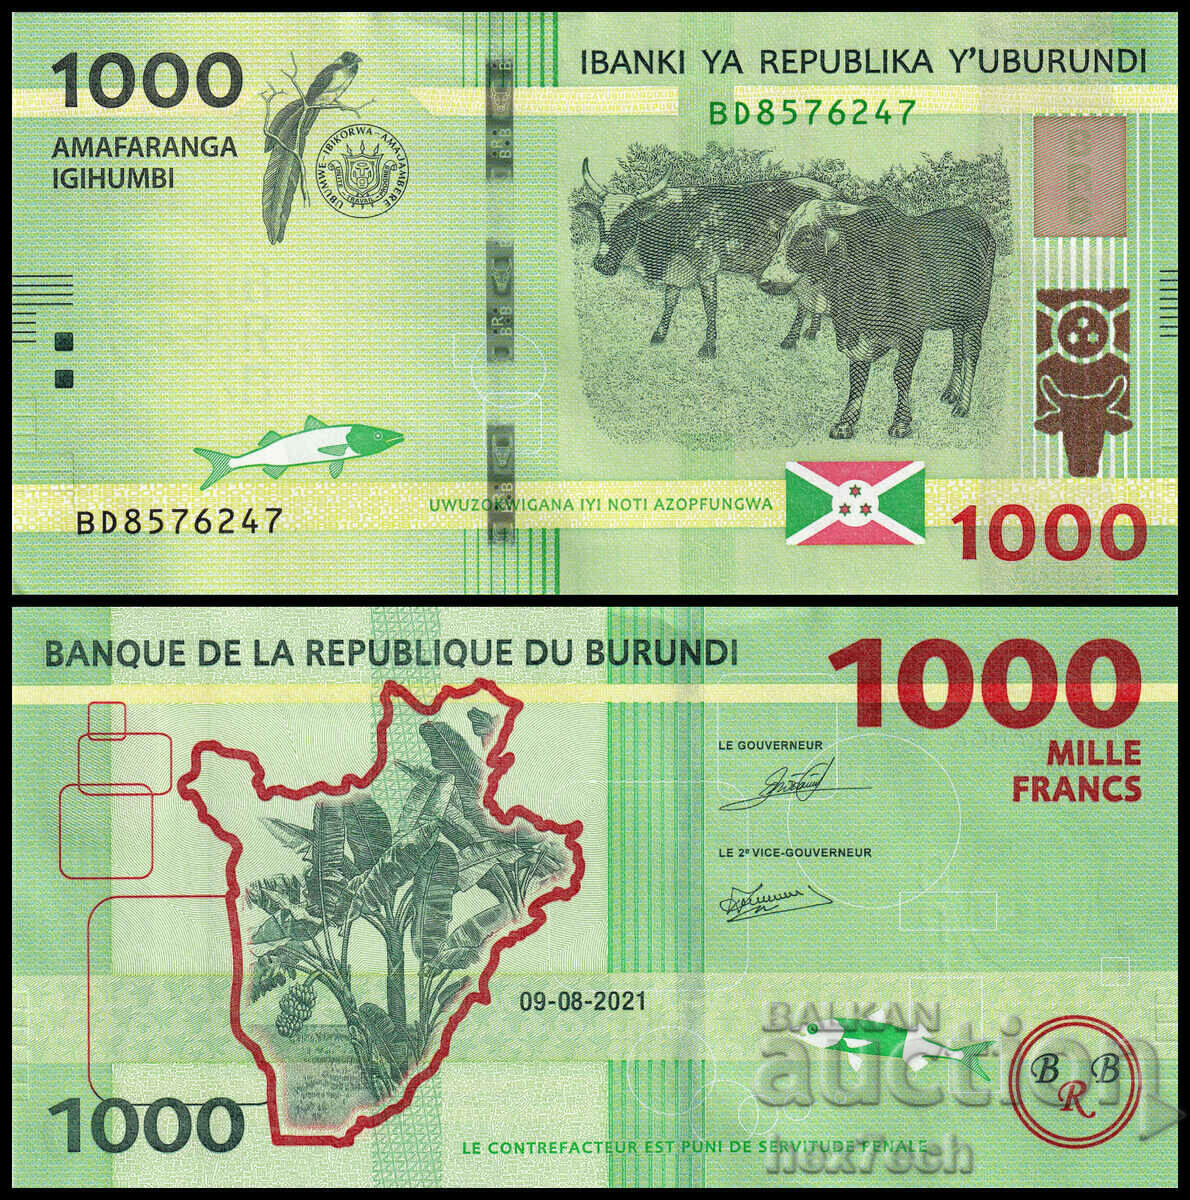 ❤️ ⭐ Burundi 2021 1000 franci UNC nou ⭐ ❤️